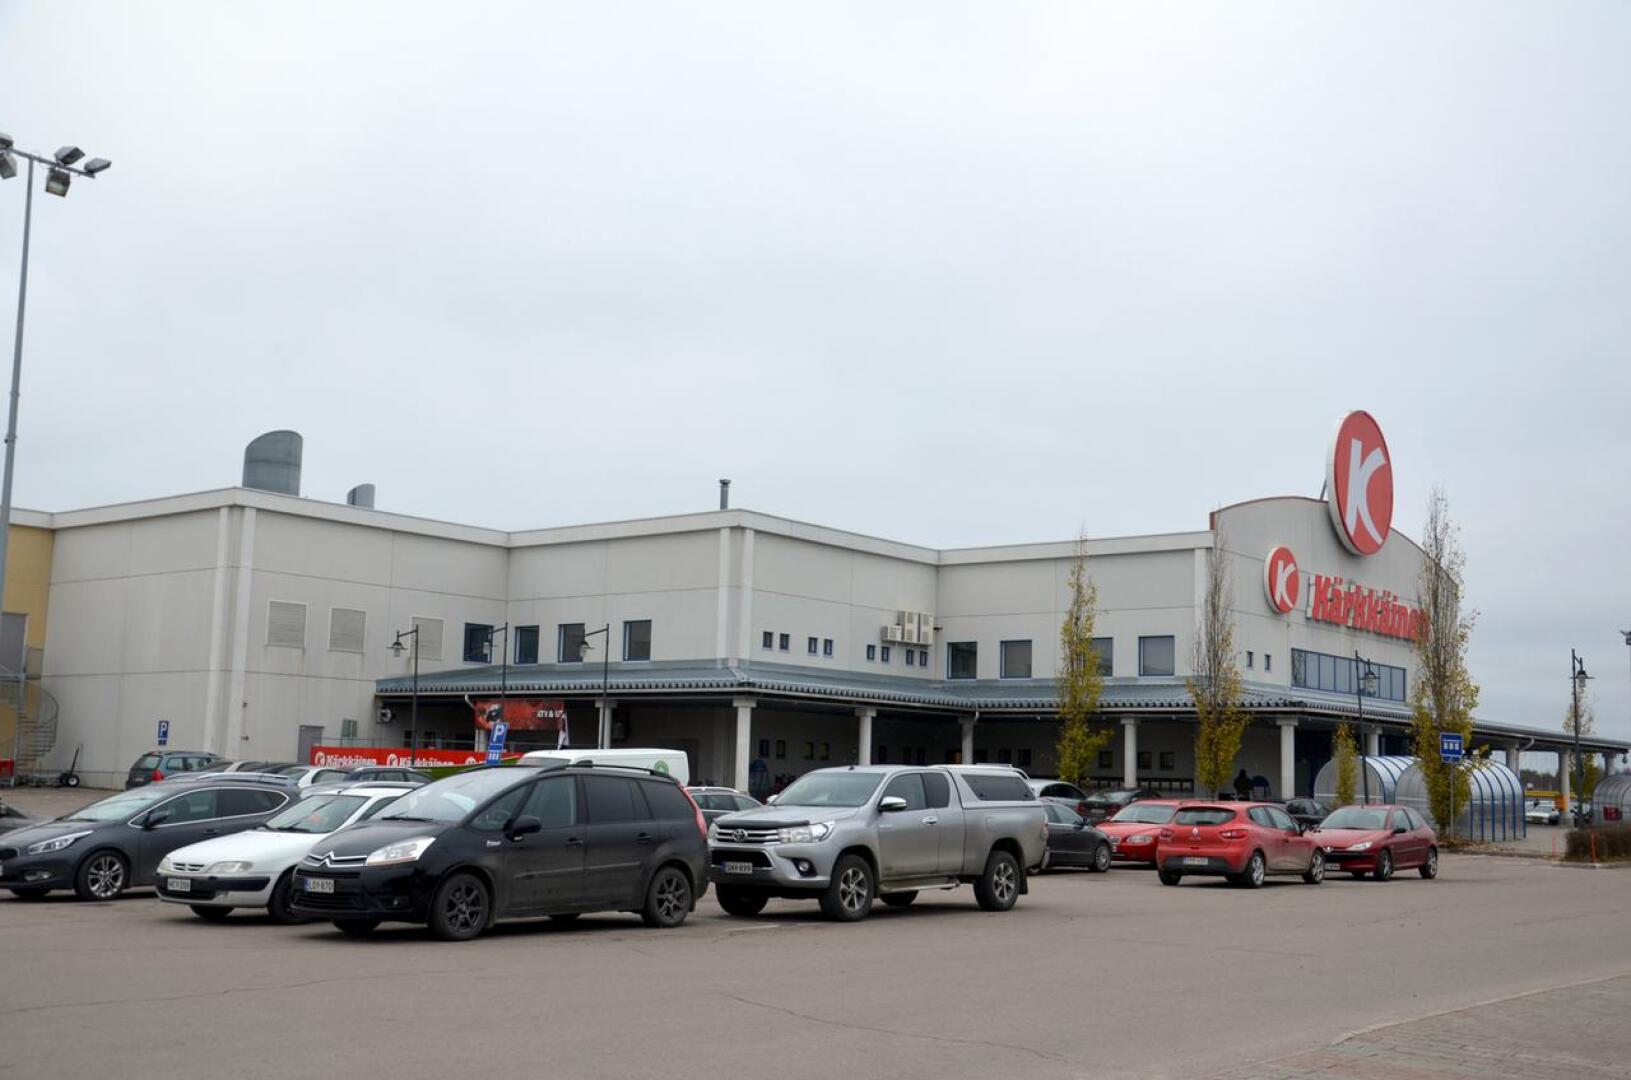 Tavarataloketju Kärkkäinen Oy:n toimitusjohtaja kehotti työntekijöitä kieltäytymään koronarokotteesta.